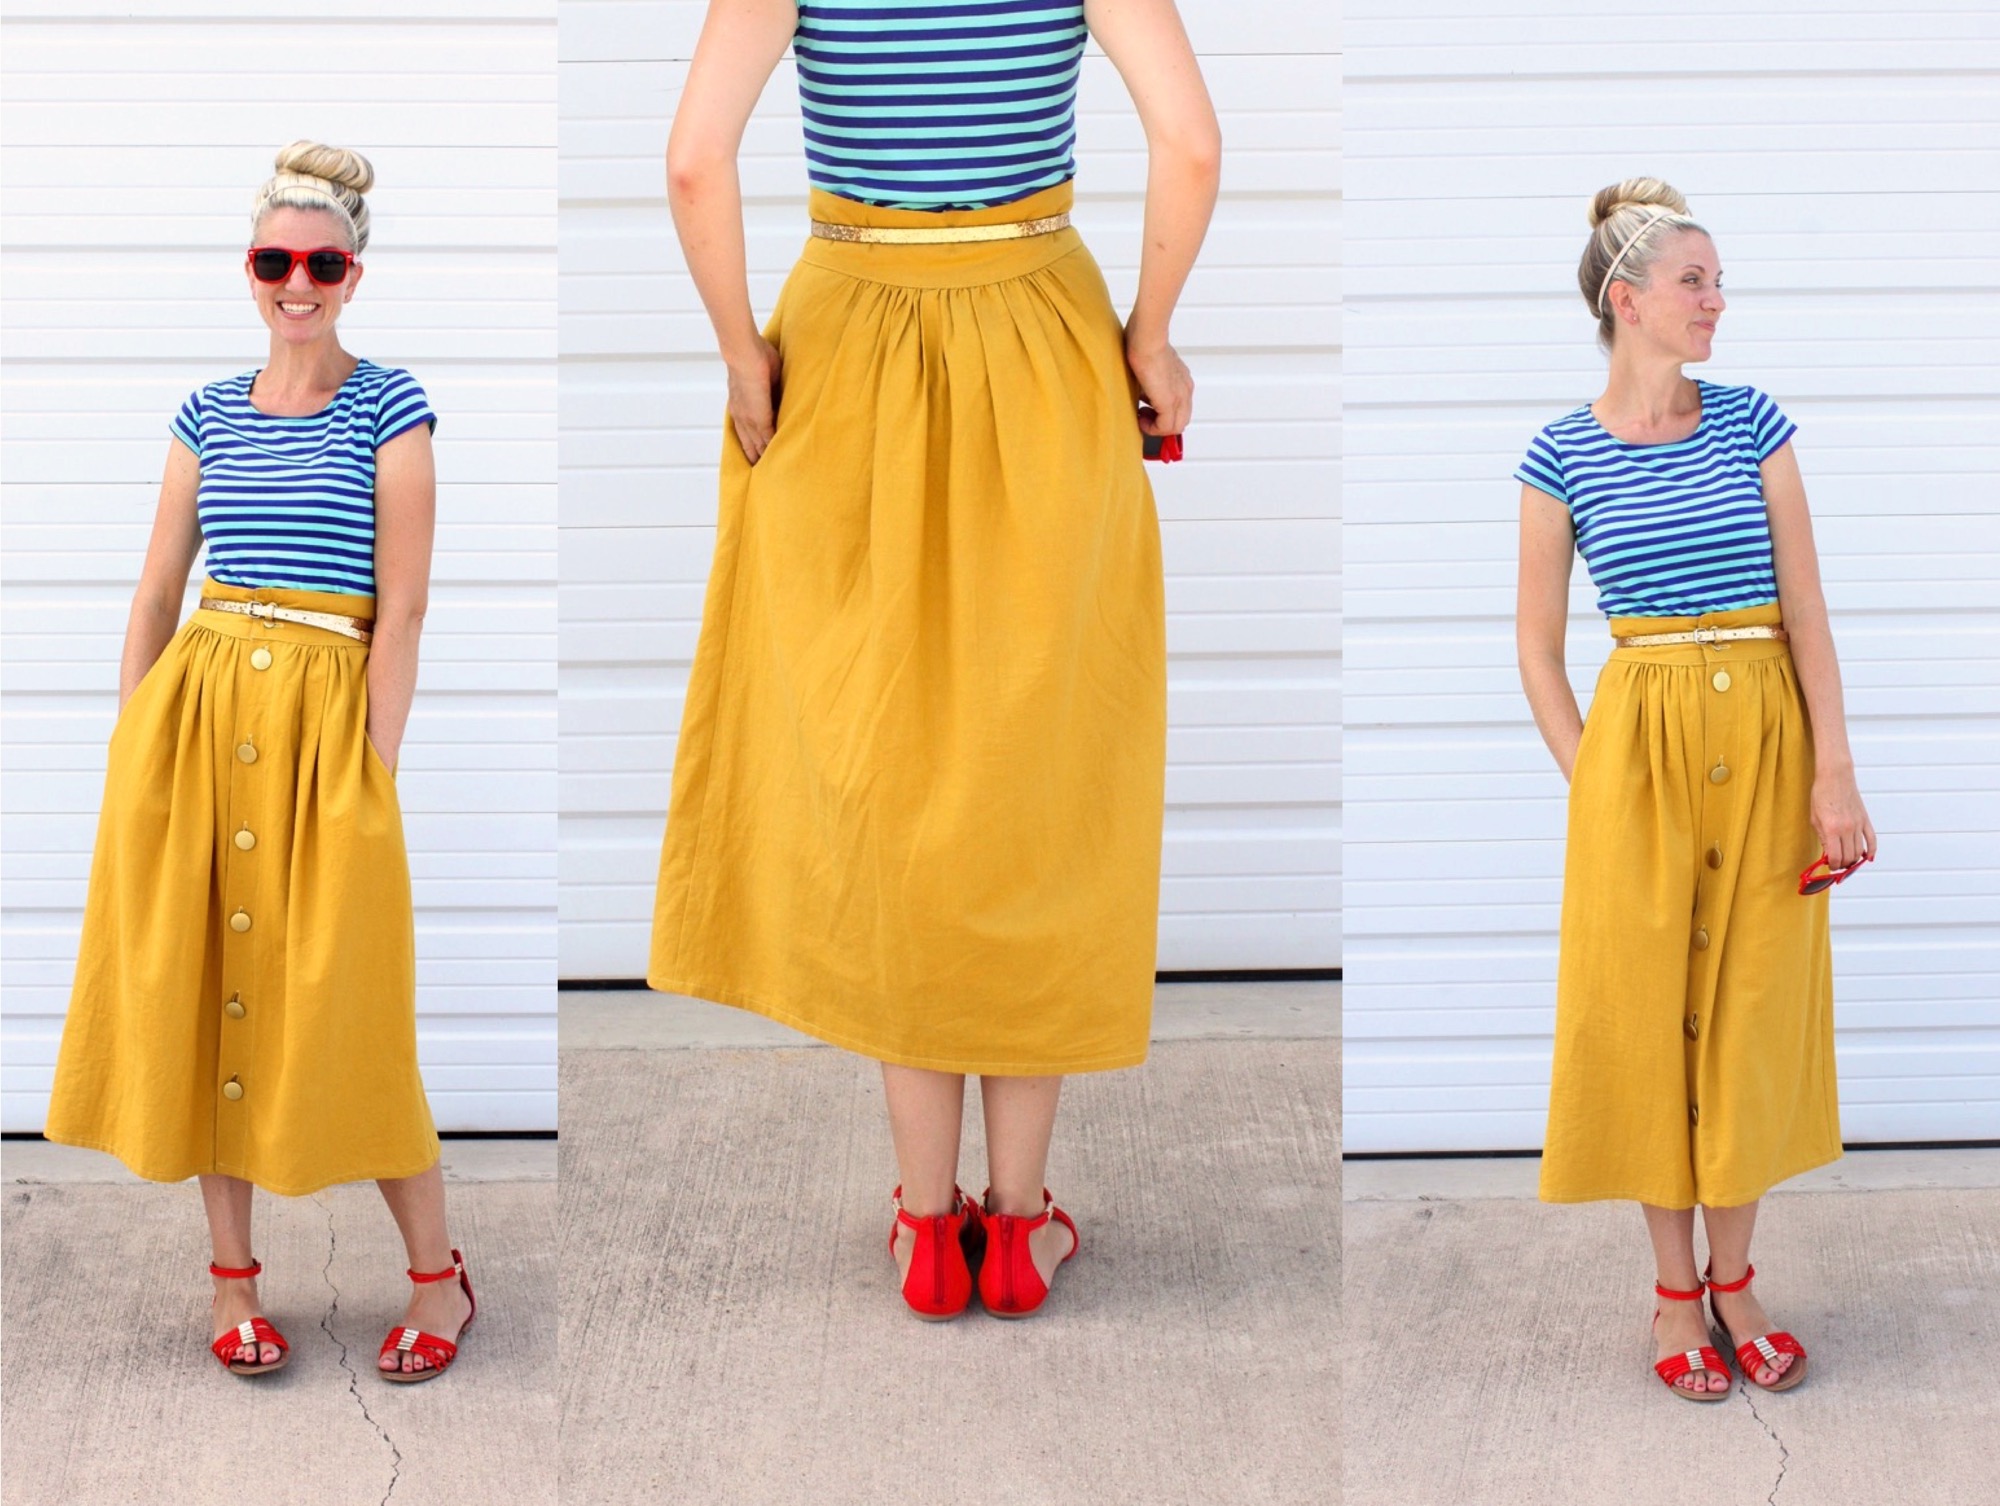 Skirt Patterns For Women 29